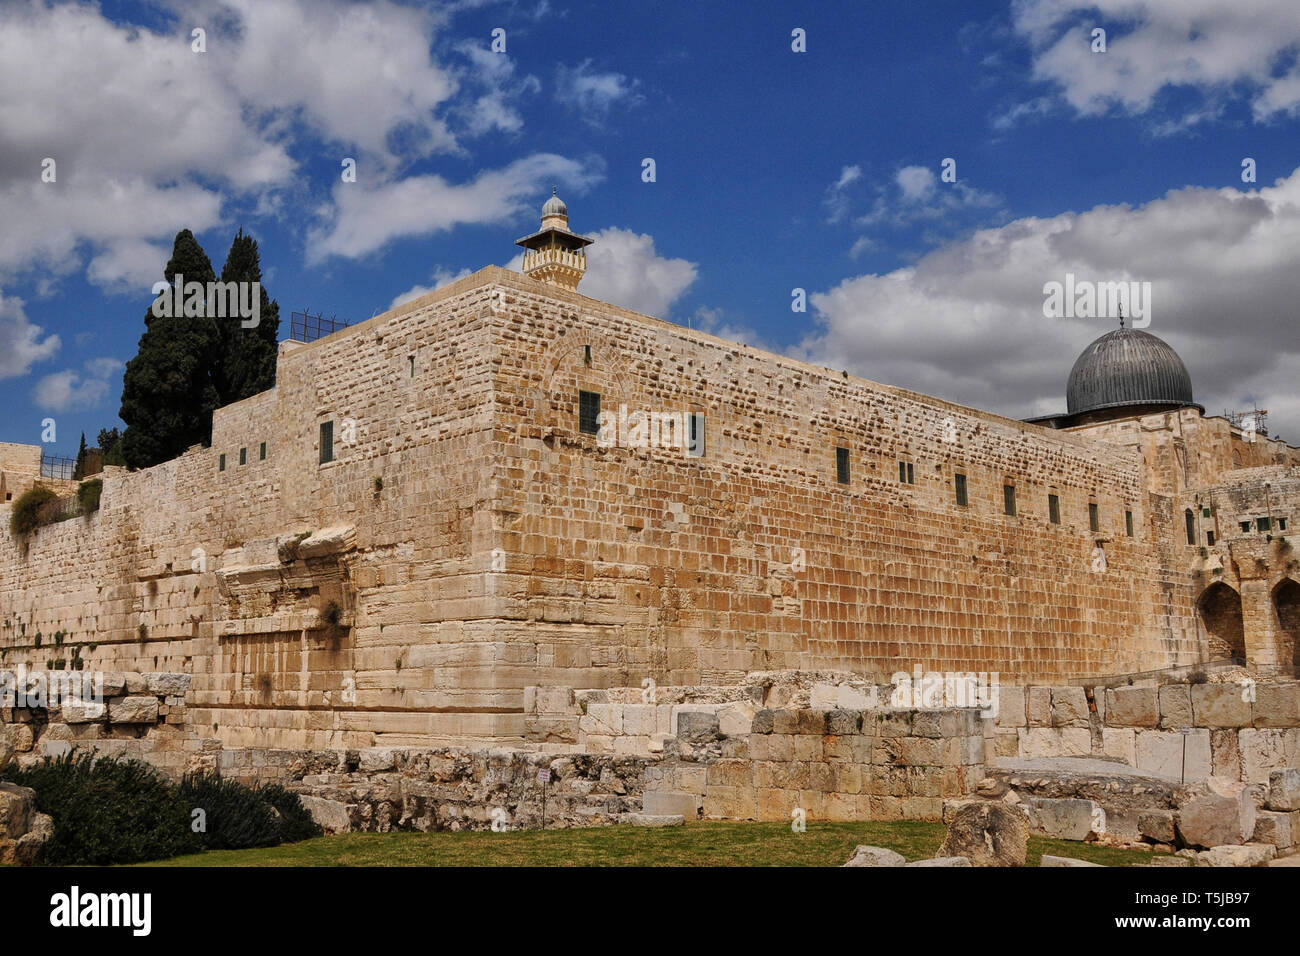 Muralla alrededor de la ciudad vieja de Jerusalén, incluyendo Robinson's Arch y al domo de la Mezquita Aqusa Foto de stock